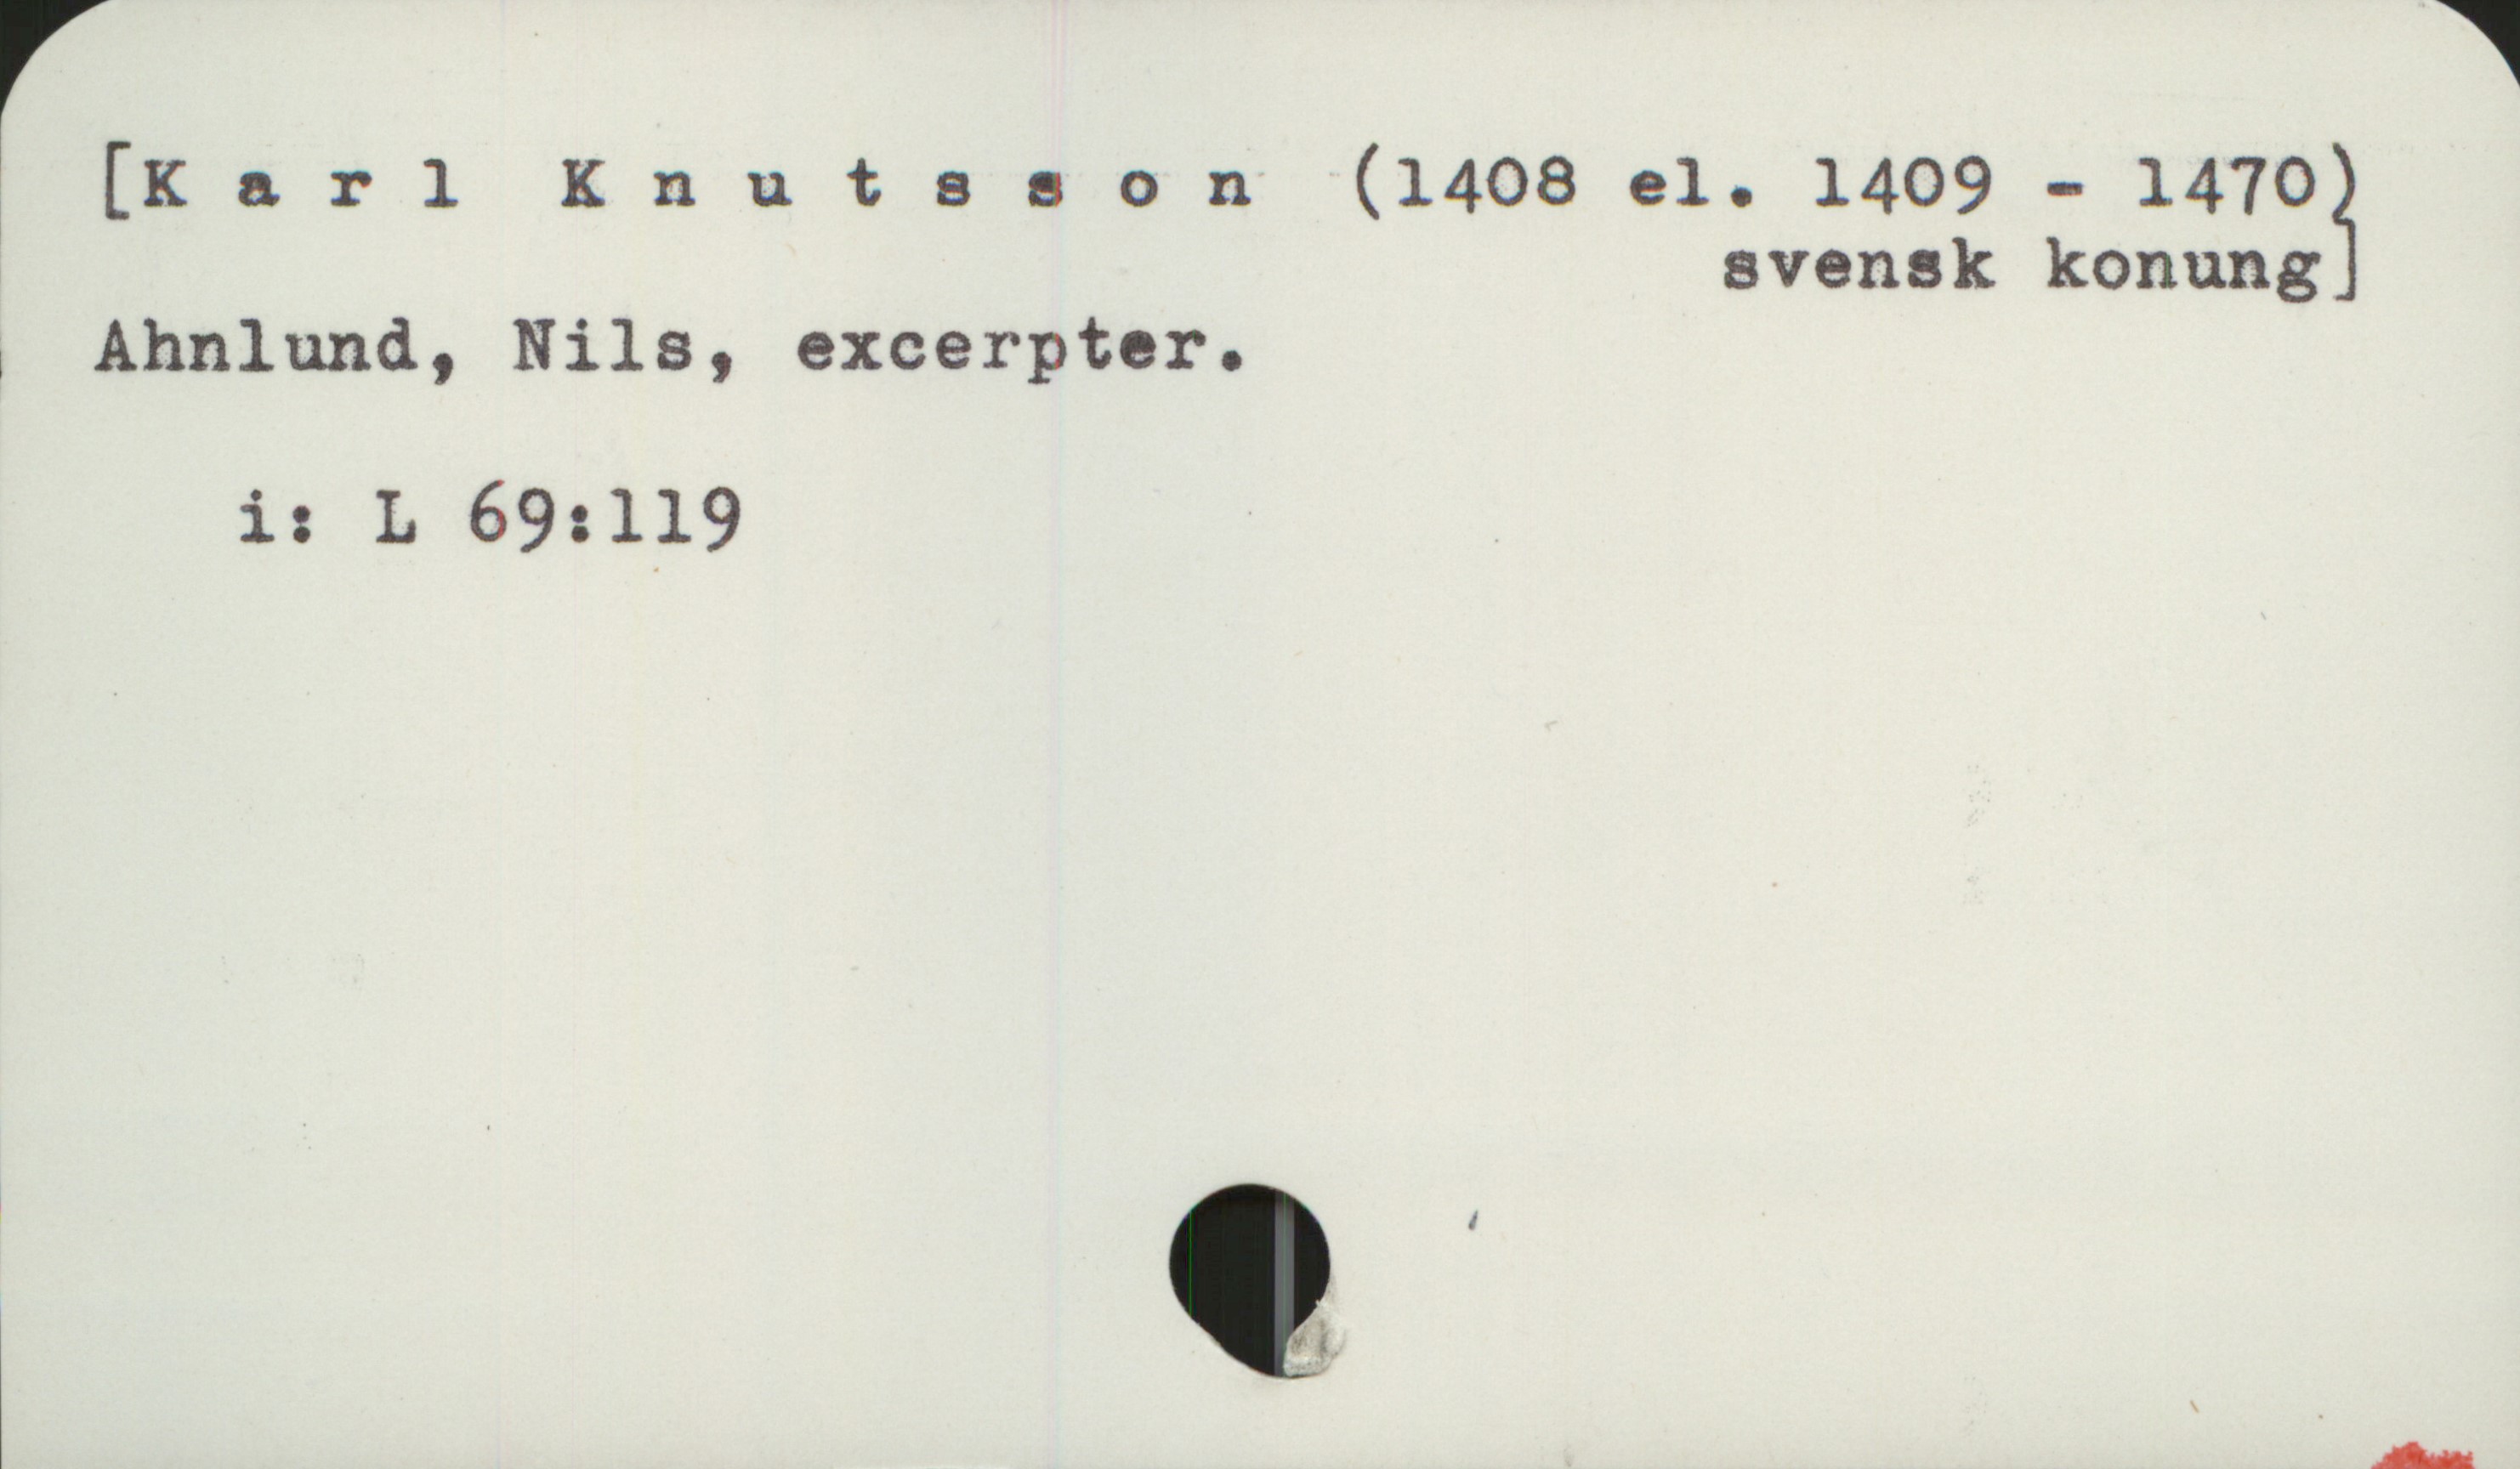  [Karl Knutsson (1408 el. 1409 - 14703
svensk konung
Ahnlund, Nils, excerpter.
i: L 69:1l9
så

